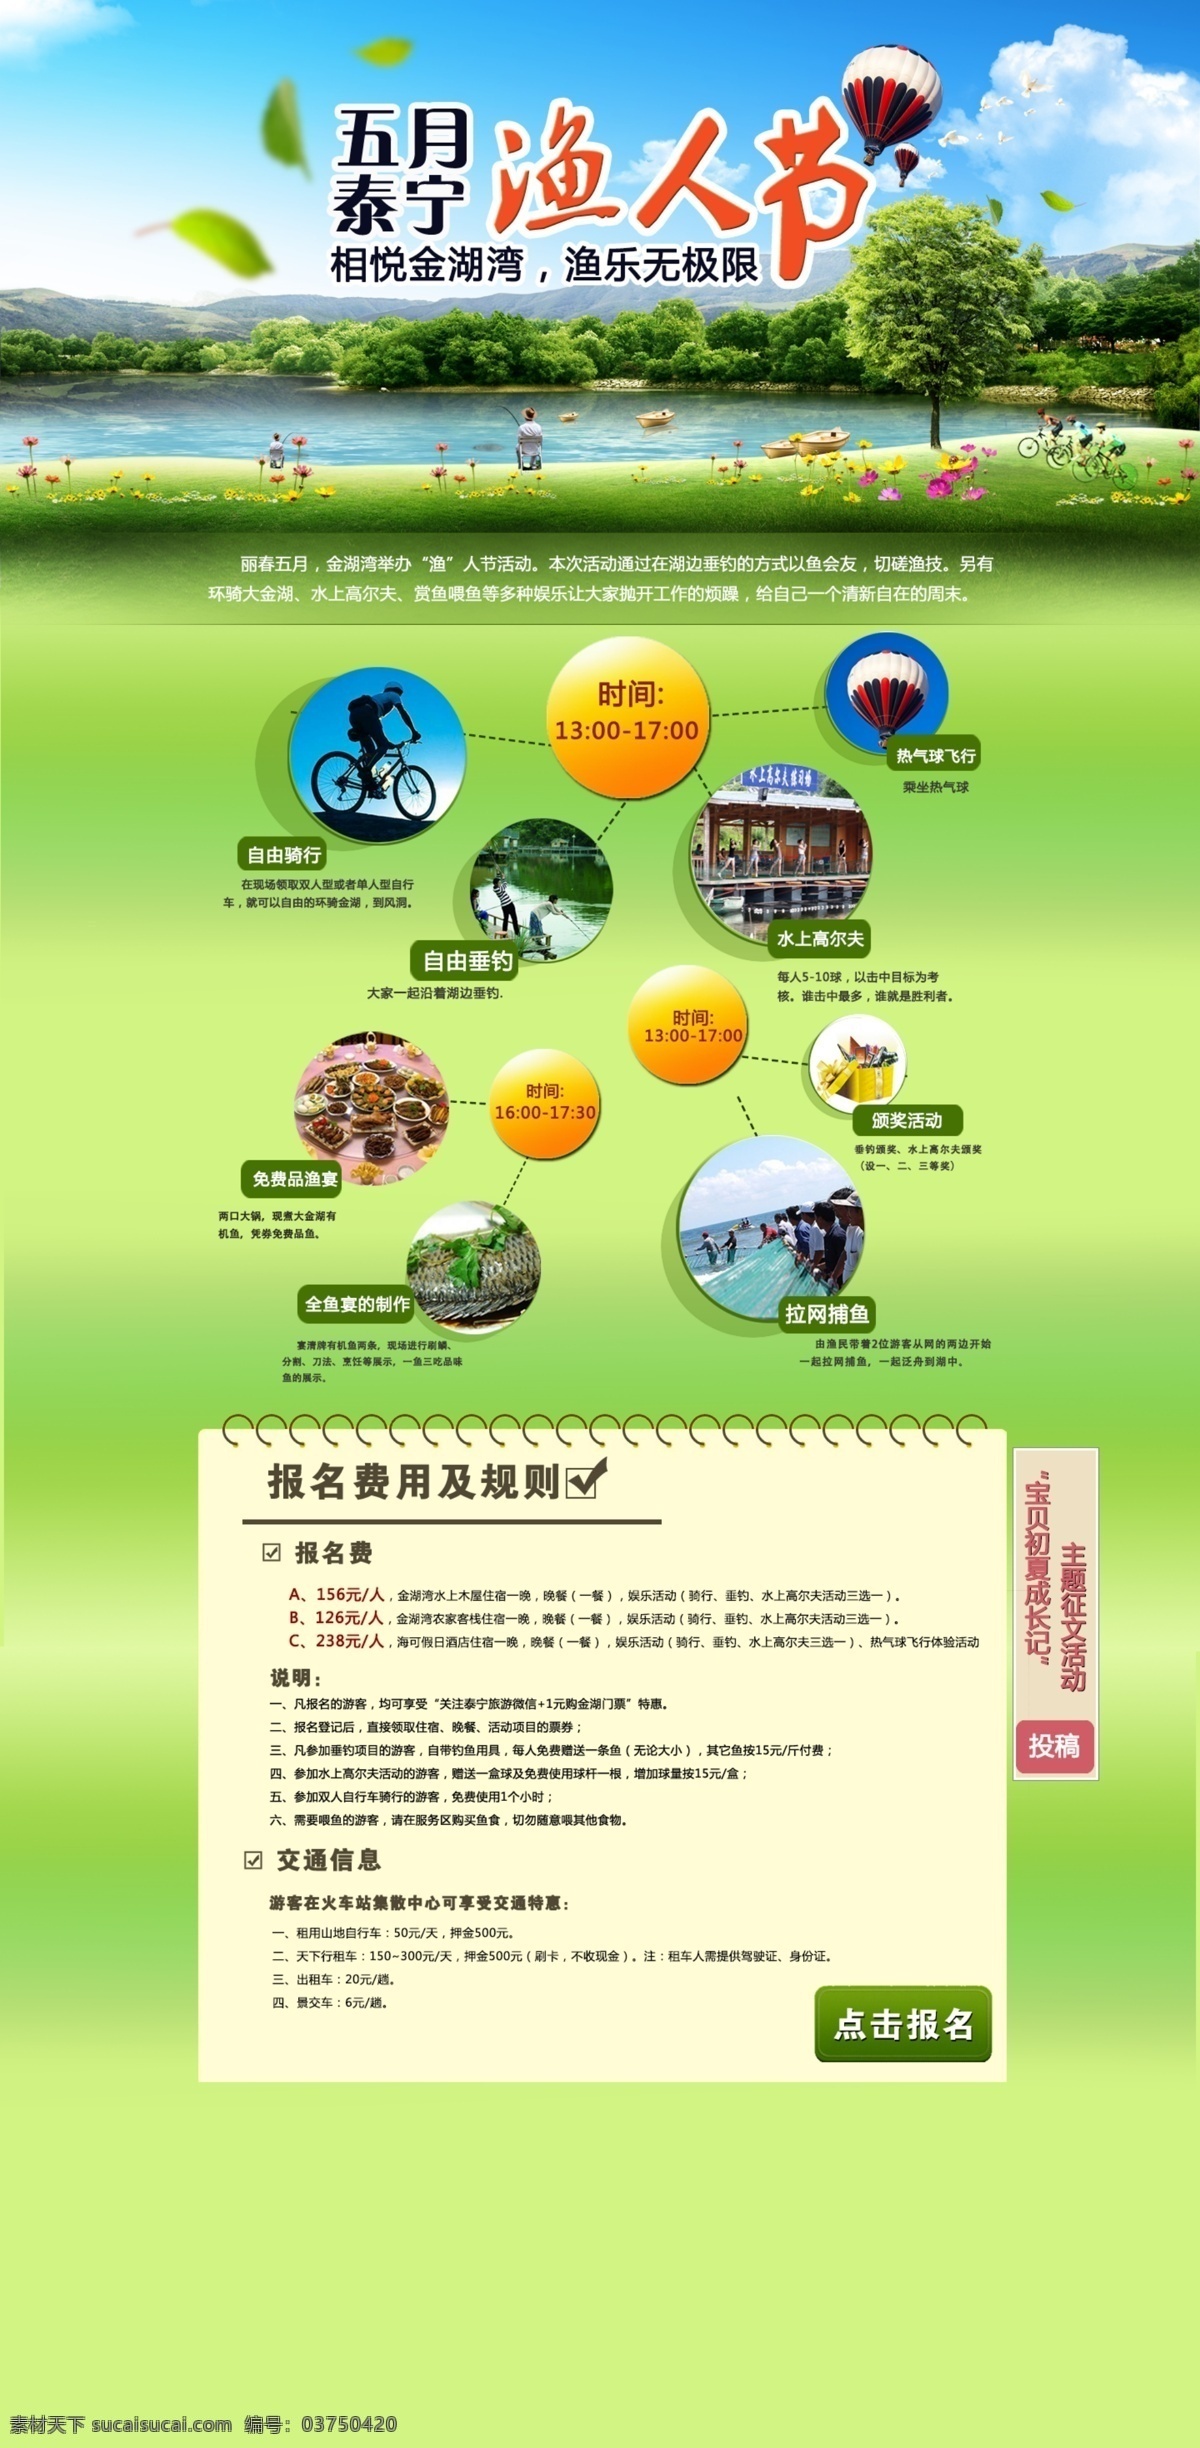 夏日 旅游 页面 旅游公司 网站 旅游路线 路程 旅游海报设计 夏日旅行海报 绿色